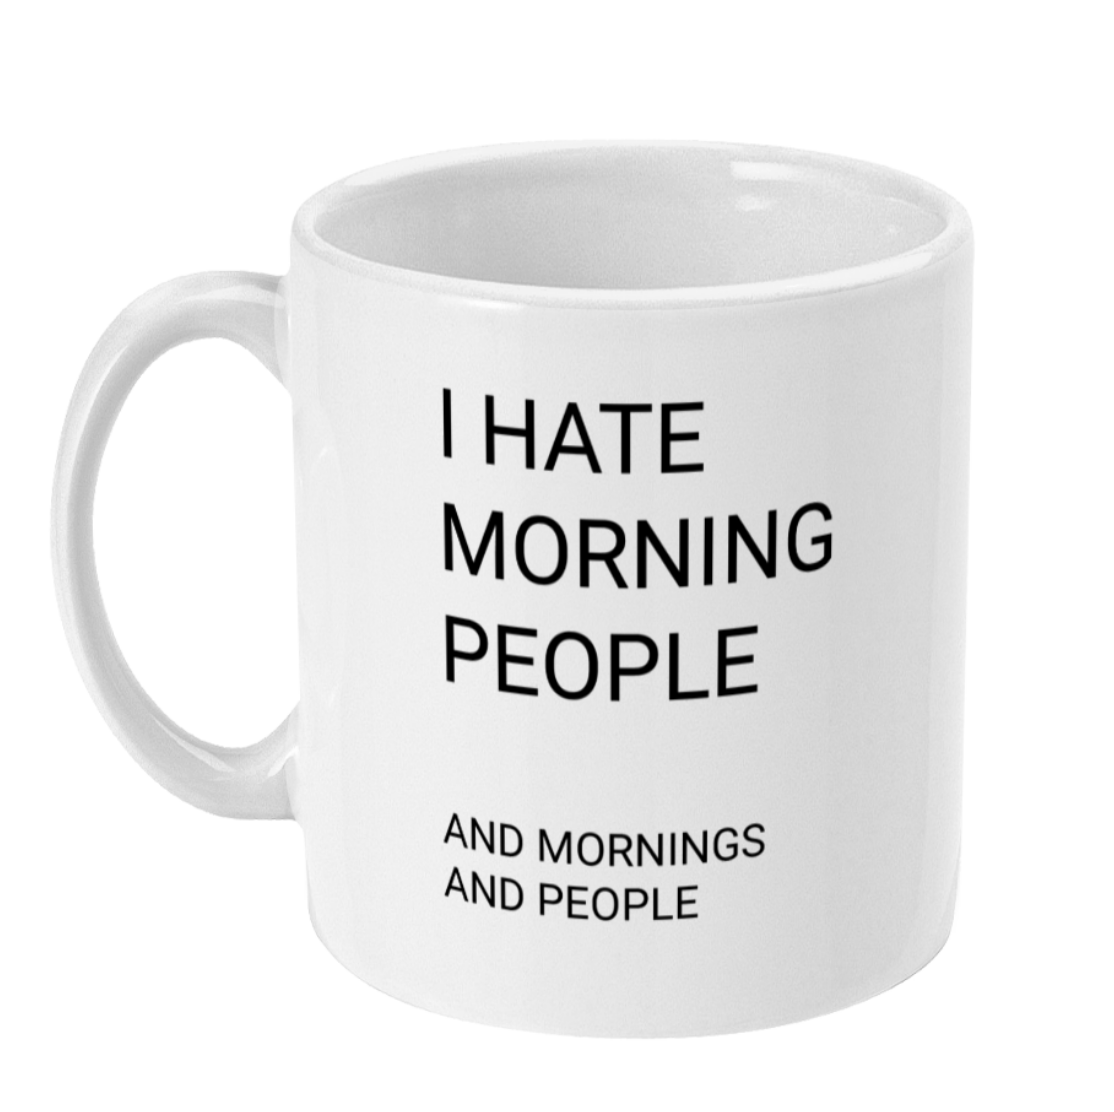 example mug 2